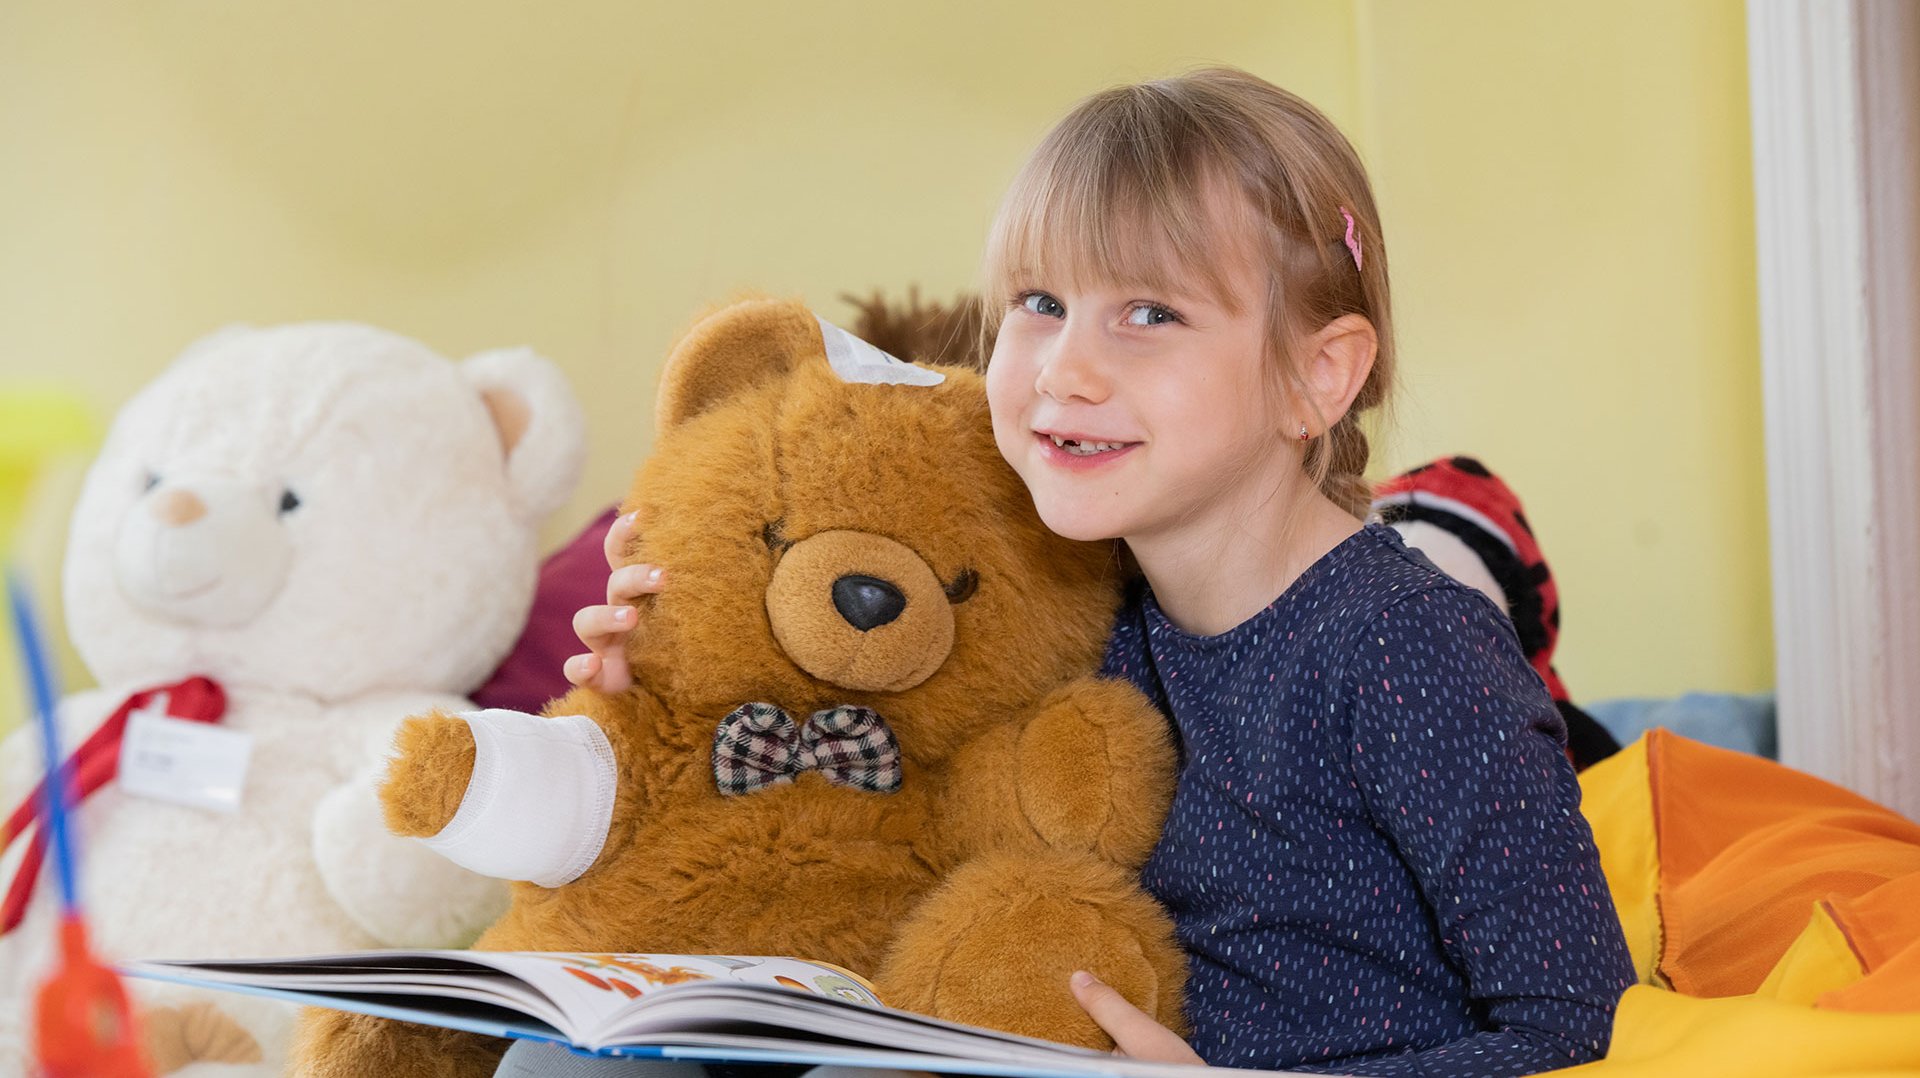 Ein blondes Mädchen hat einen großen Teddybären im Arm und ein Buch auf dem Schoß. Der Teddy hat einen Verband am Arm und ein Pflaster auf dem Kopf. Das Mädchen schaut lächelnd in die Kamera.